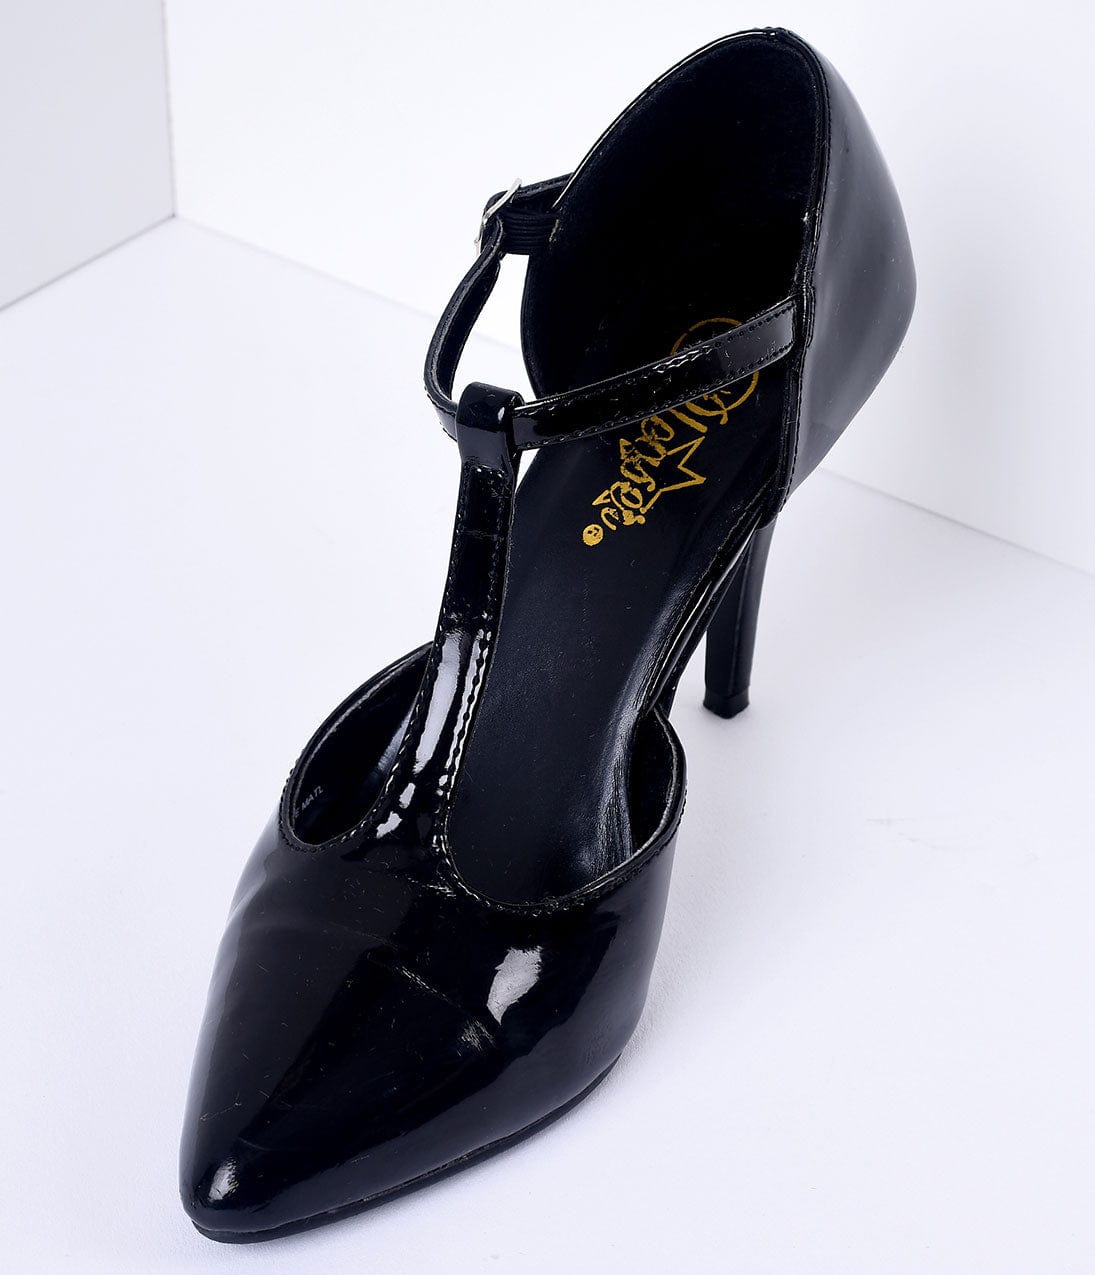 black flapper shoes